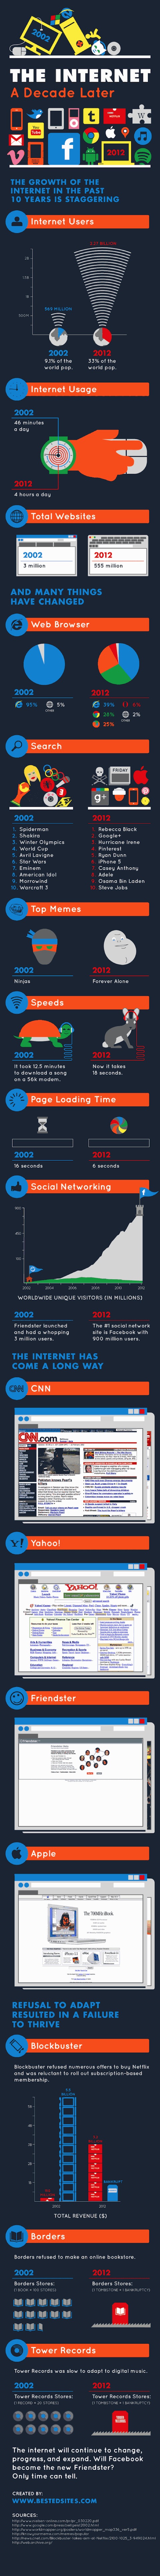 Internet en 2002 et en 2012 : la comparaison